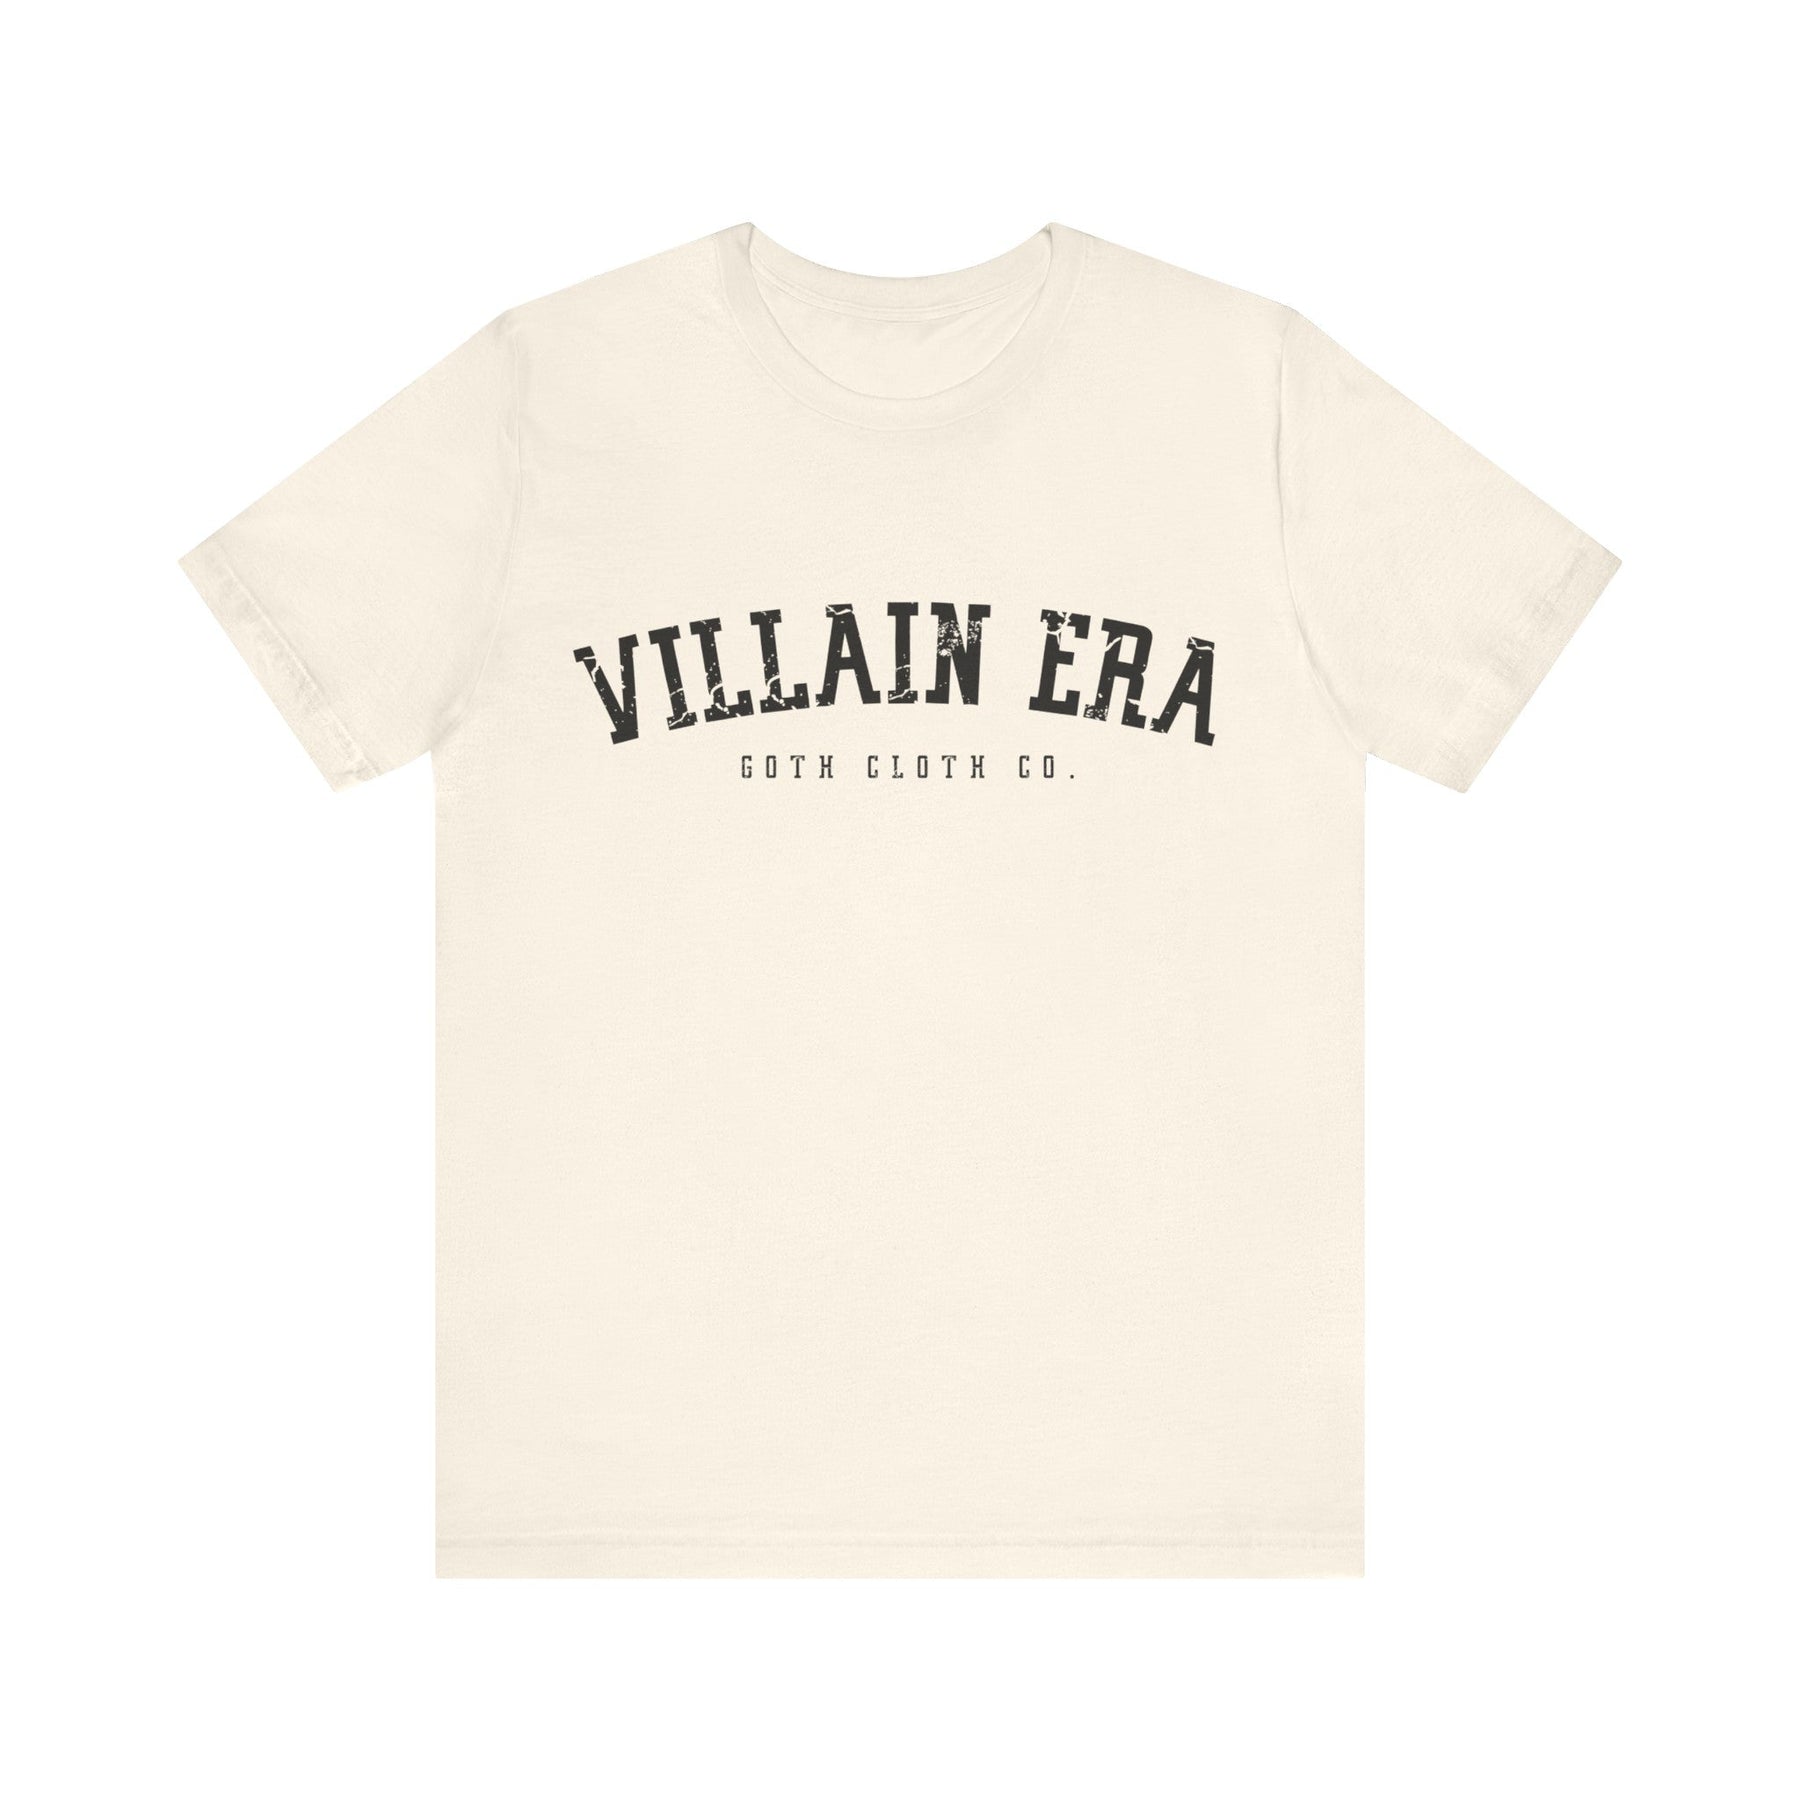 Villain Era Short Sleeve Tee - Goth Cloth Co.T - Shirt13836994802026410886